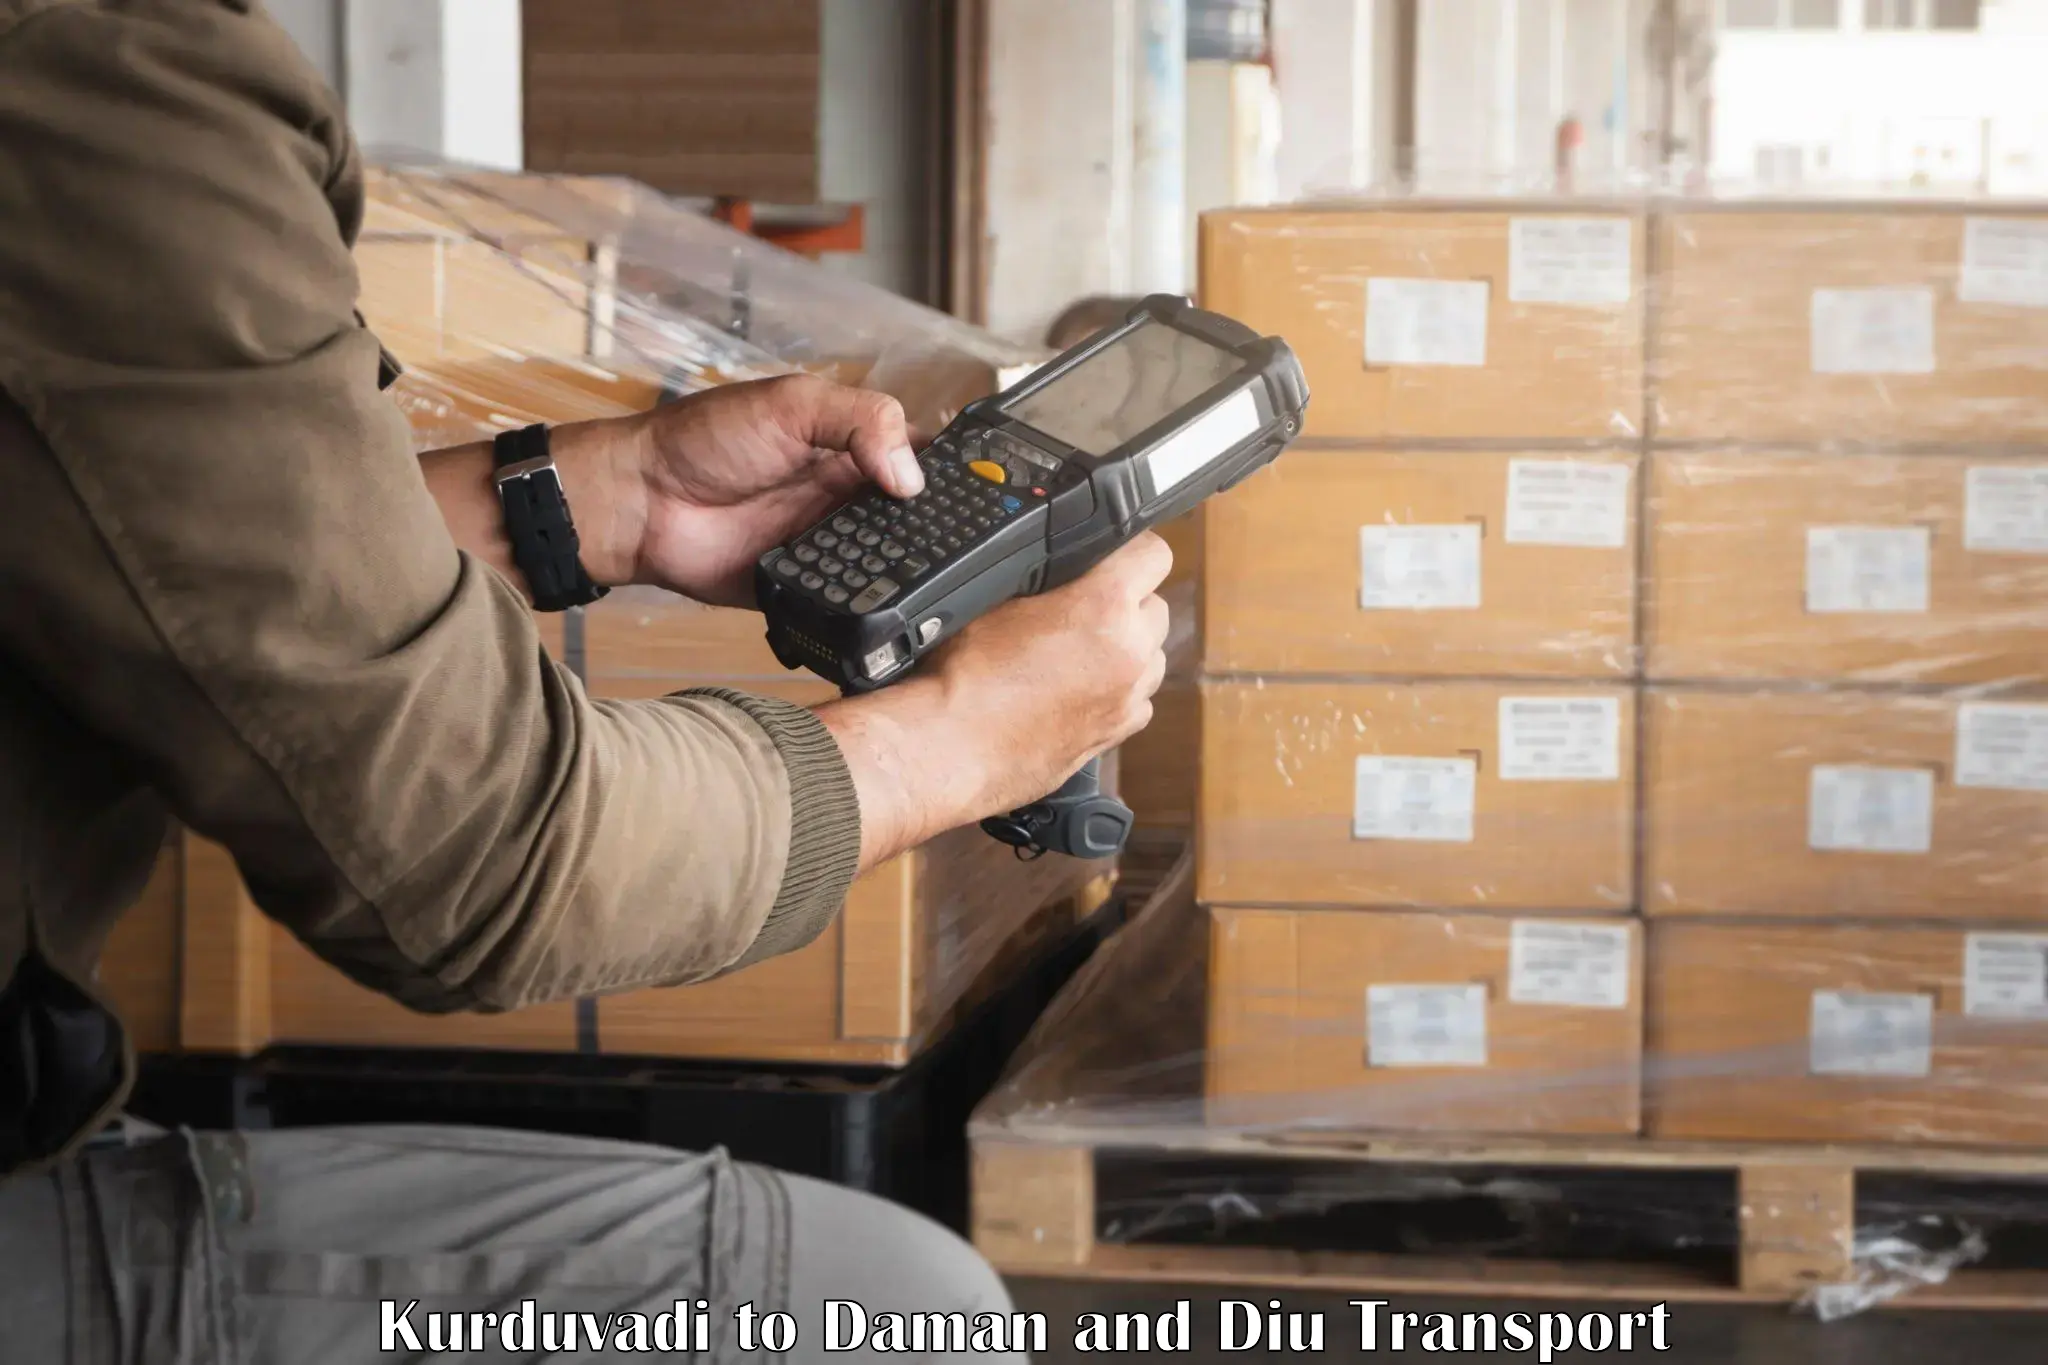 Air freight transport services Kurduvadi to Daman and Diu